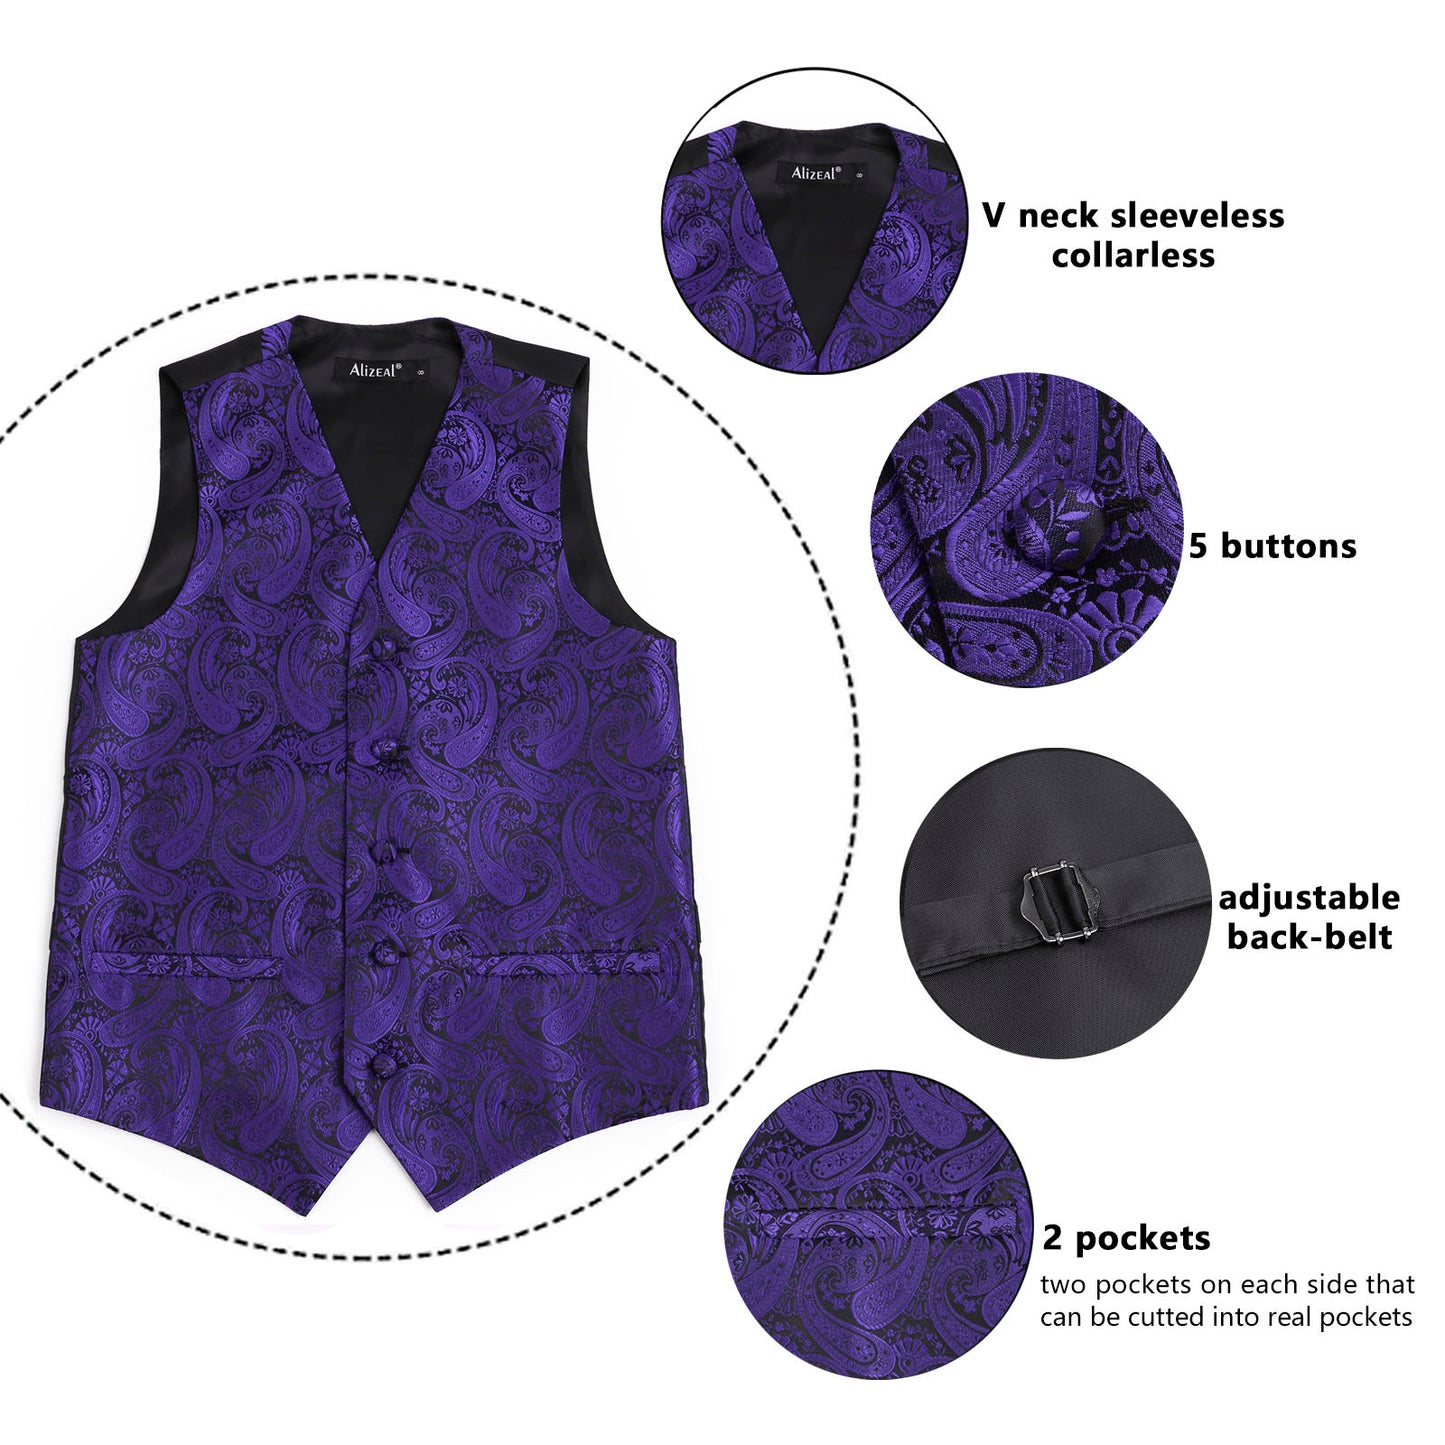 Boy's Paisley Jacquard Pre-Tied Bow Tie with Classic Floral Dress Suit Vest Set, 077-Dark Purple